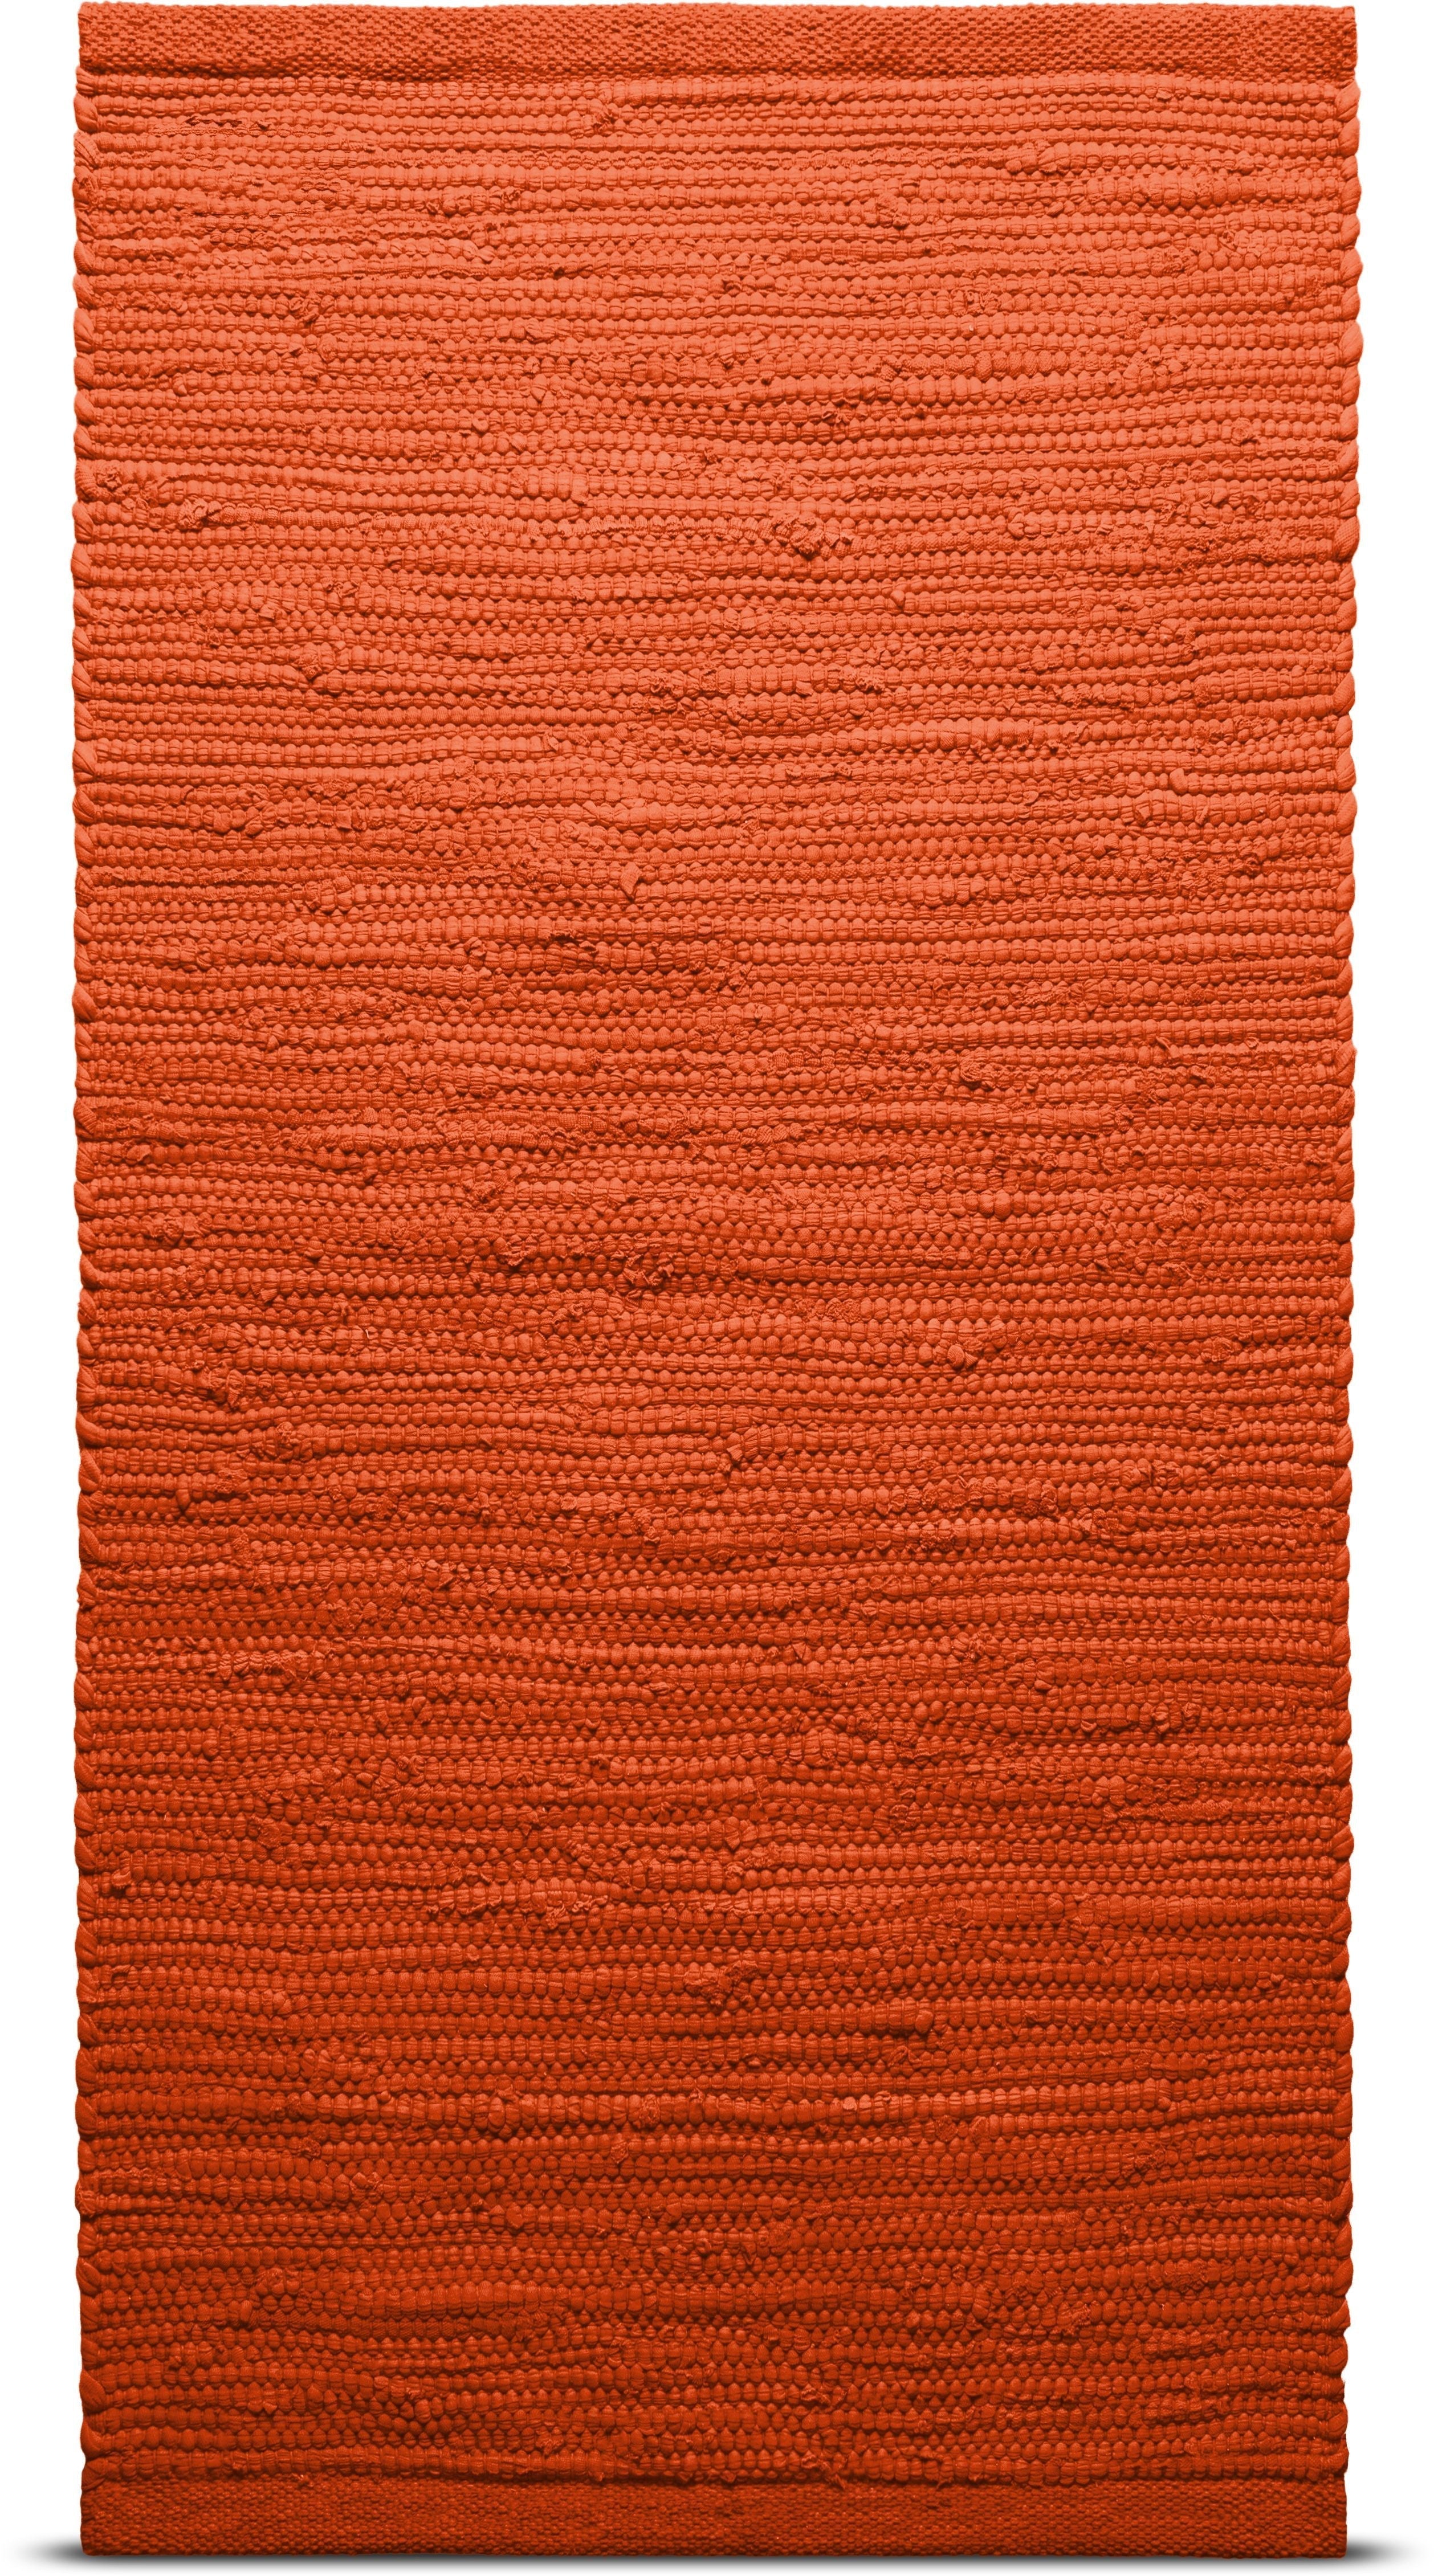 Tappeto di cotone solido 75 x 200 cm, arancione solare